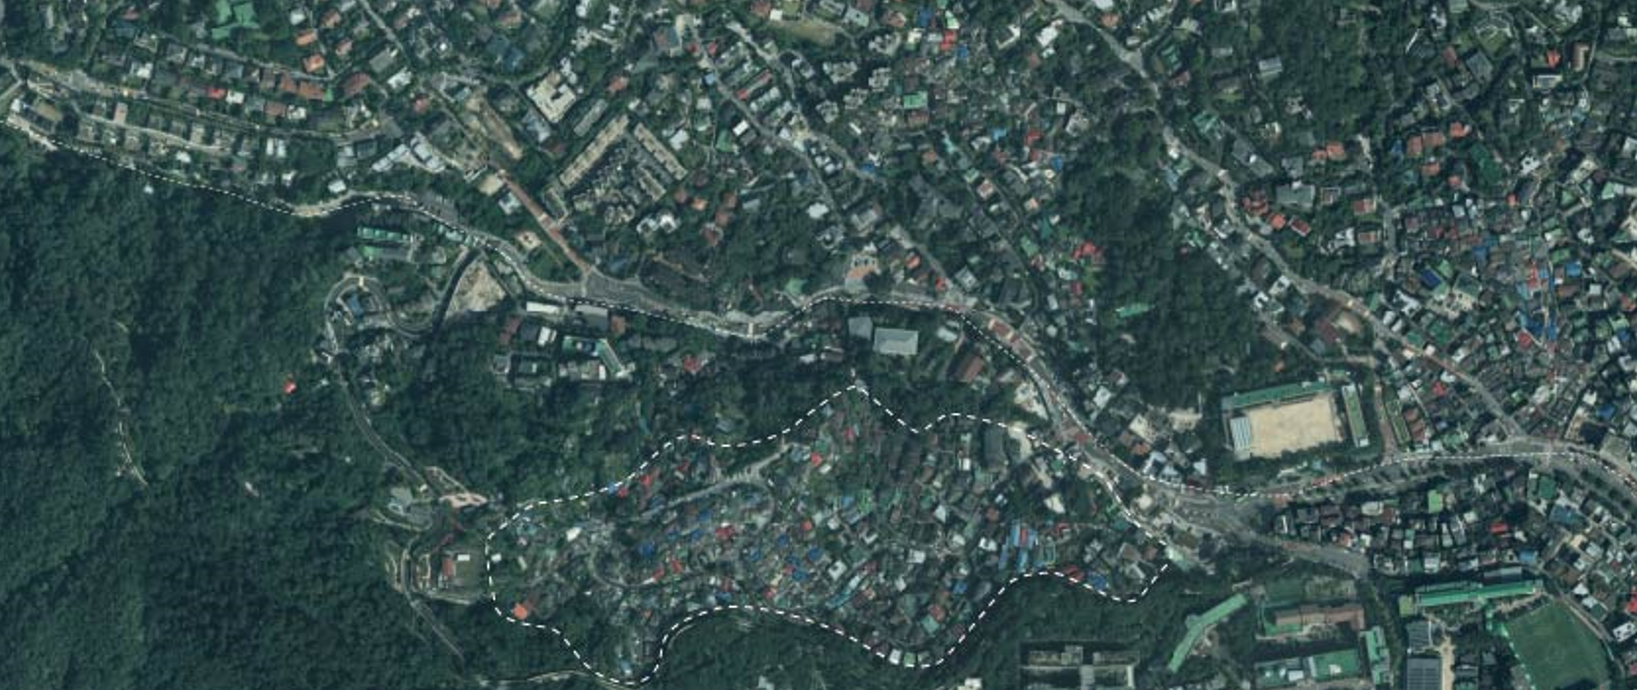 성북동의 고급 주택가(지도 상단)와 인접한 달동네(지도 하단)의 모습.